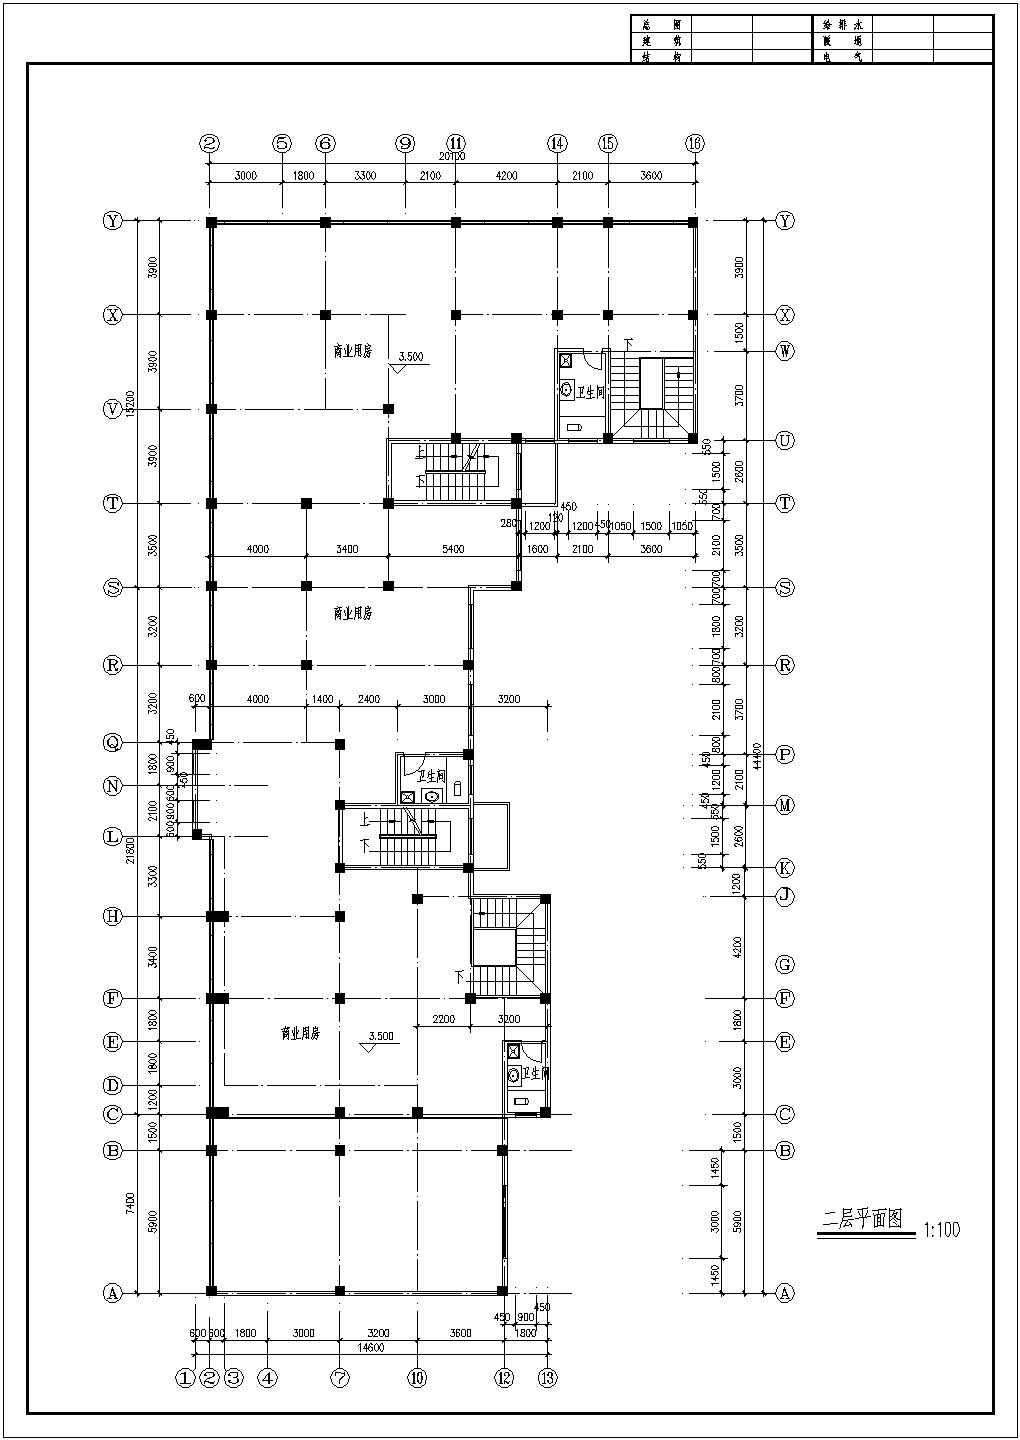 九龙园小区多层住宅楼家装施工设计cad图纸(含复式底层平面图)